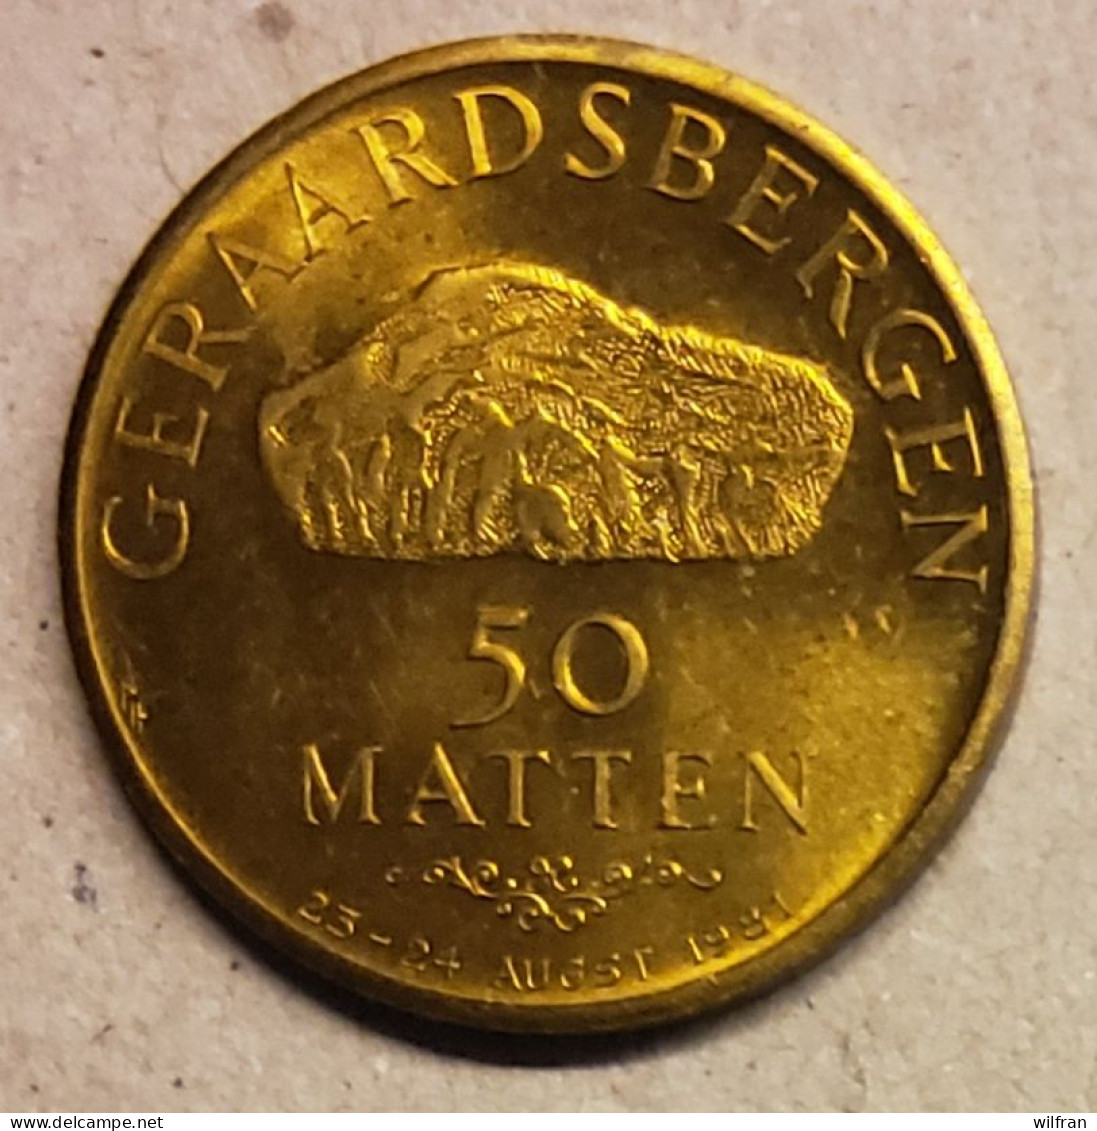 4528 Vz Geraardsbergen 50 Matten - Kz Manneken Pis Anno 1455 - Jetons De Communes